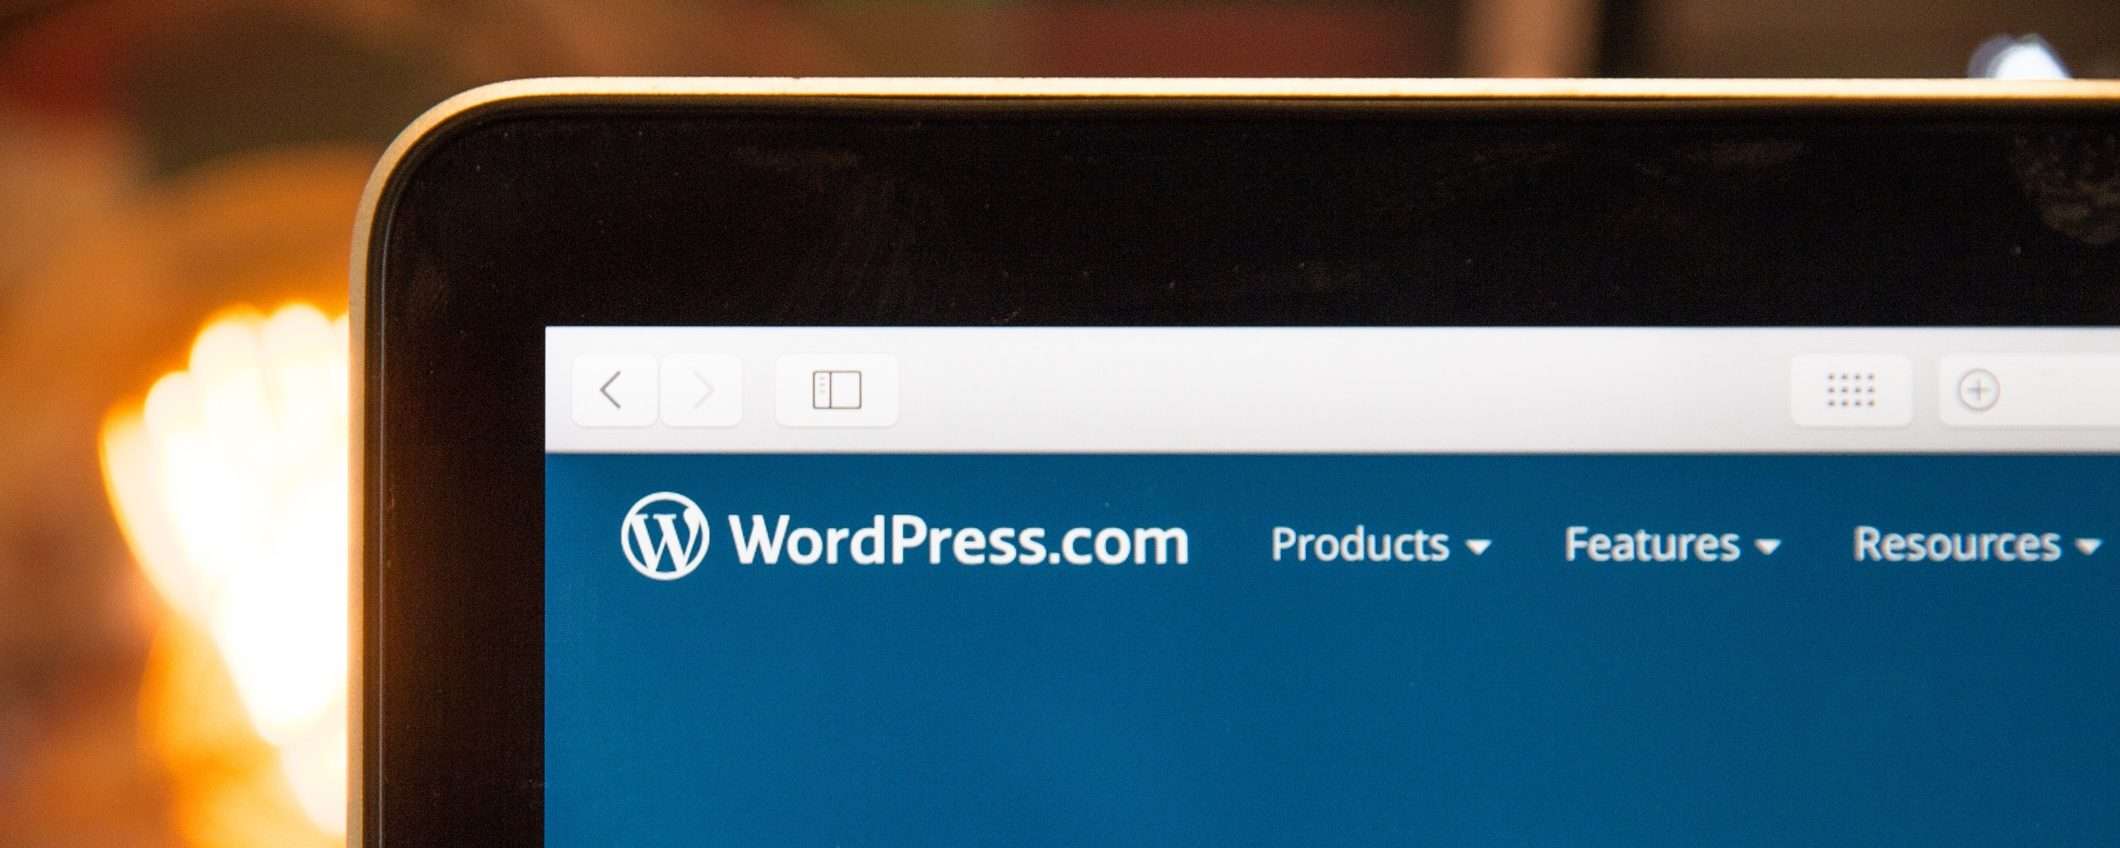 WordPress 6.4 è disponibile: tutte le novità